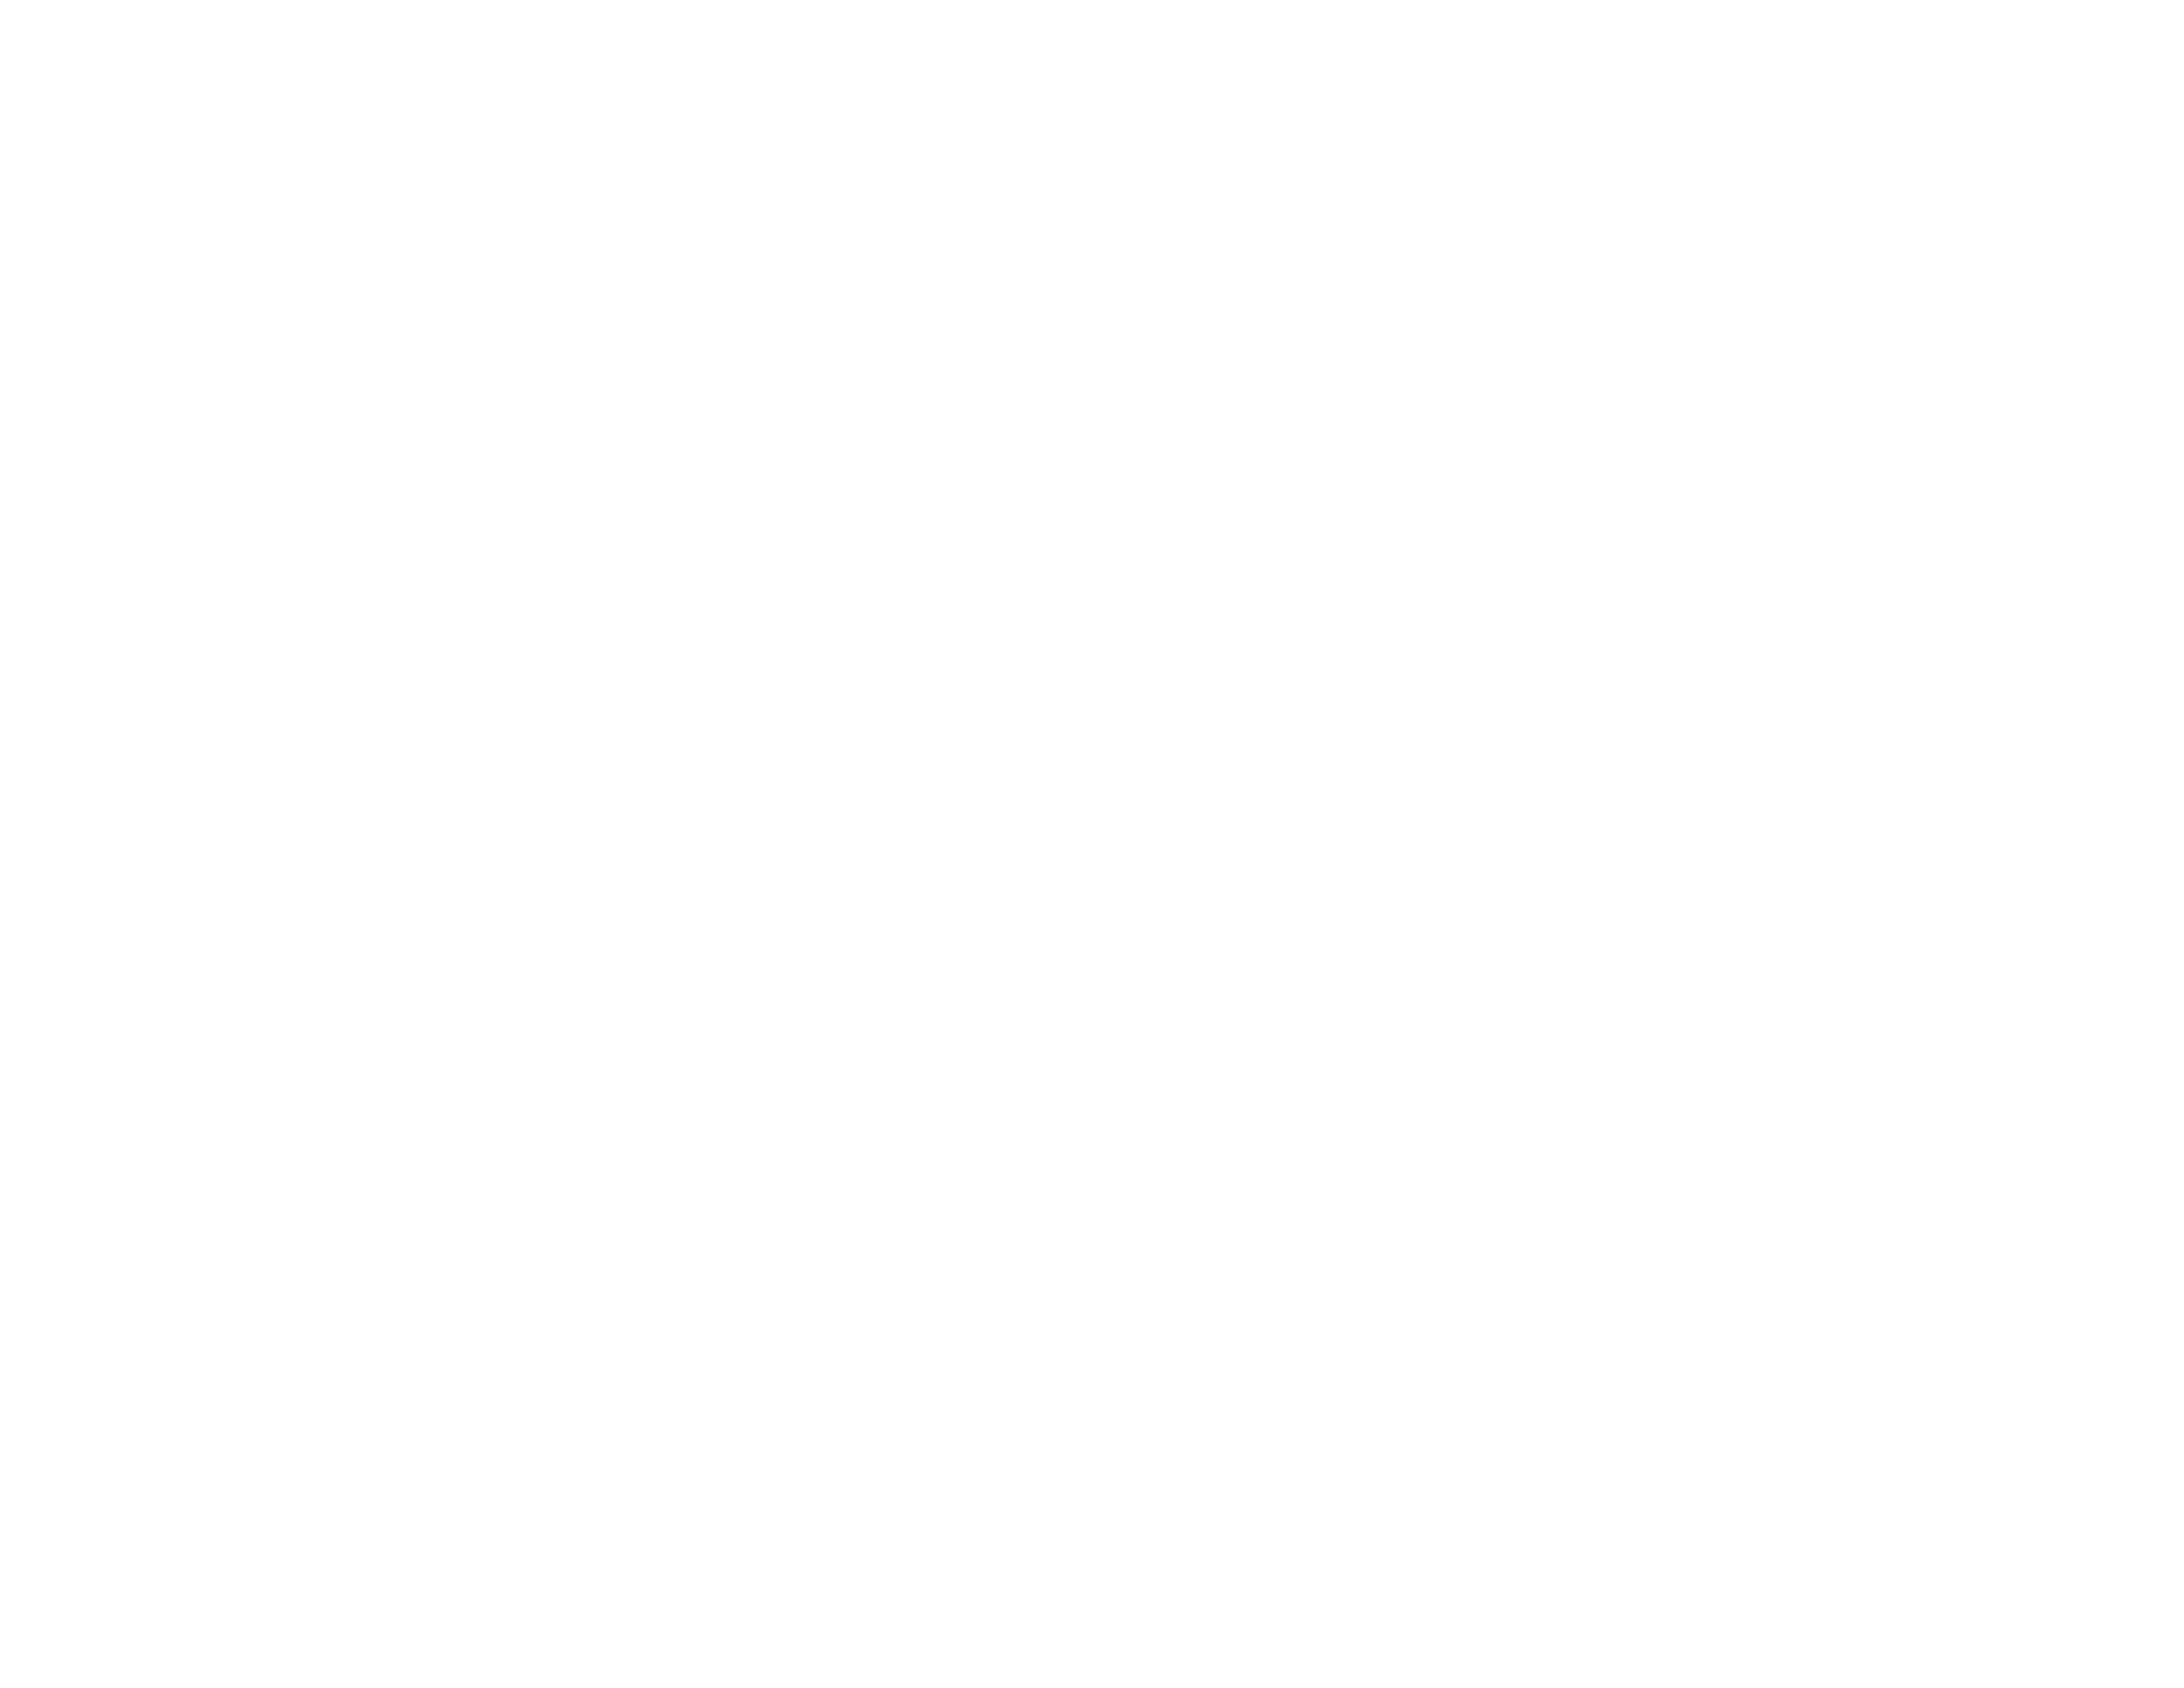 South Oak